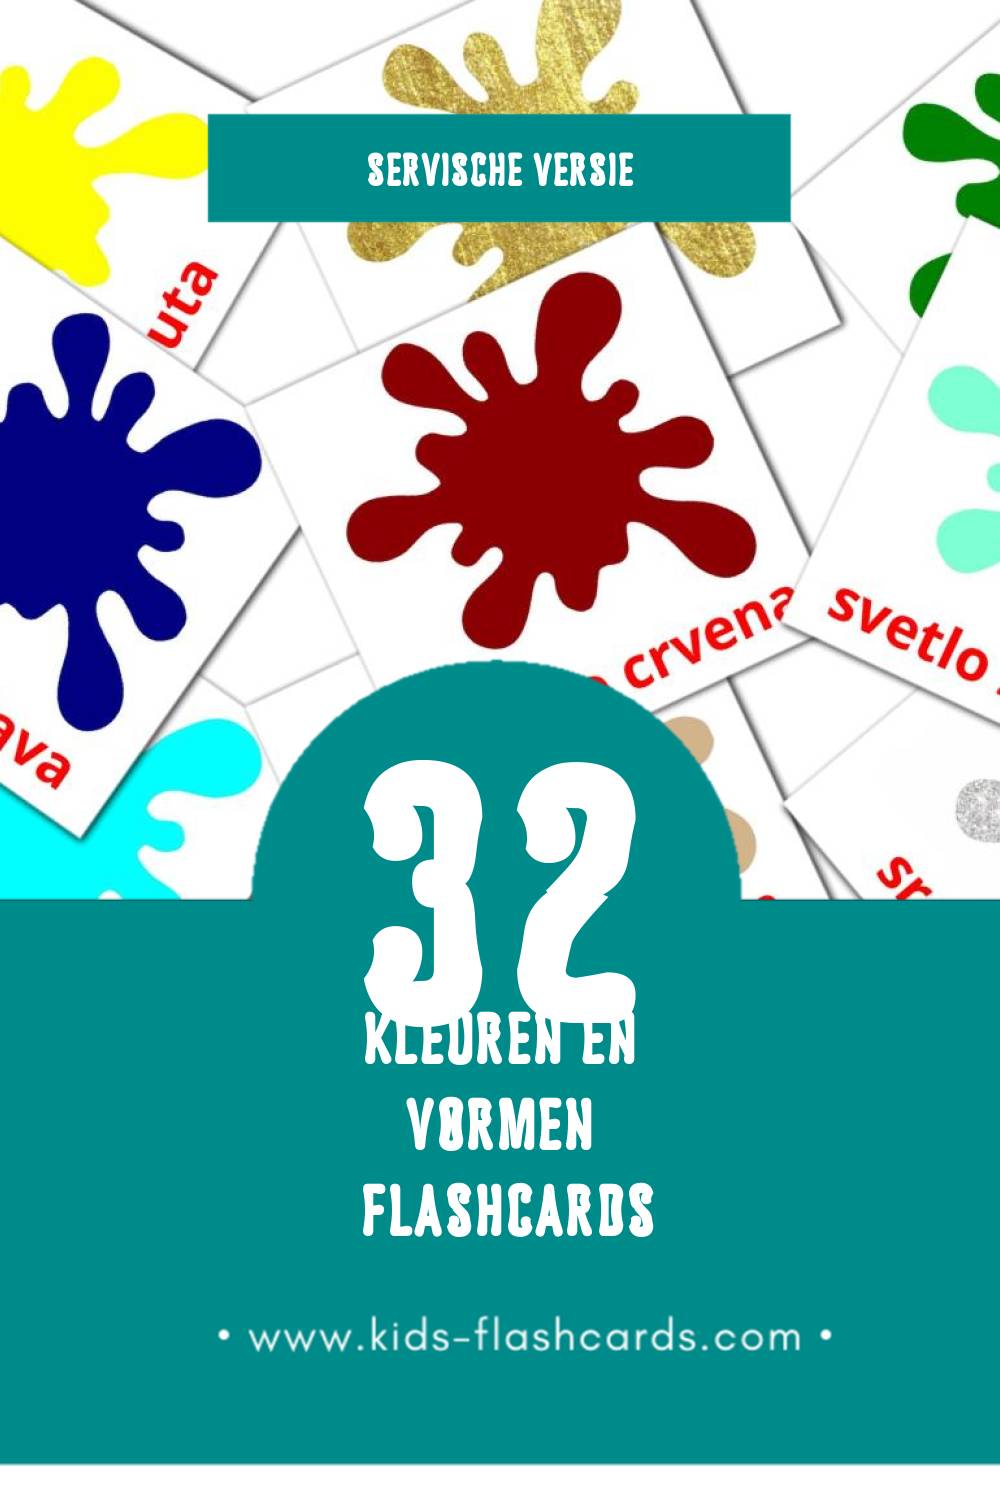 Visuele Boje i oblici Flashcards voor Kleuters (32 kaarten in het Servisch)